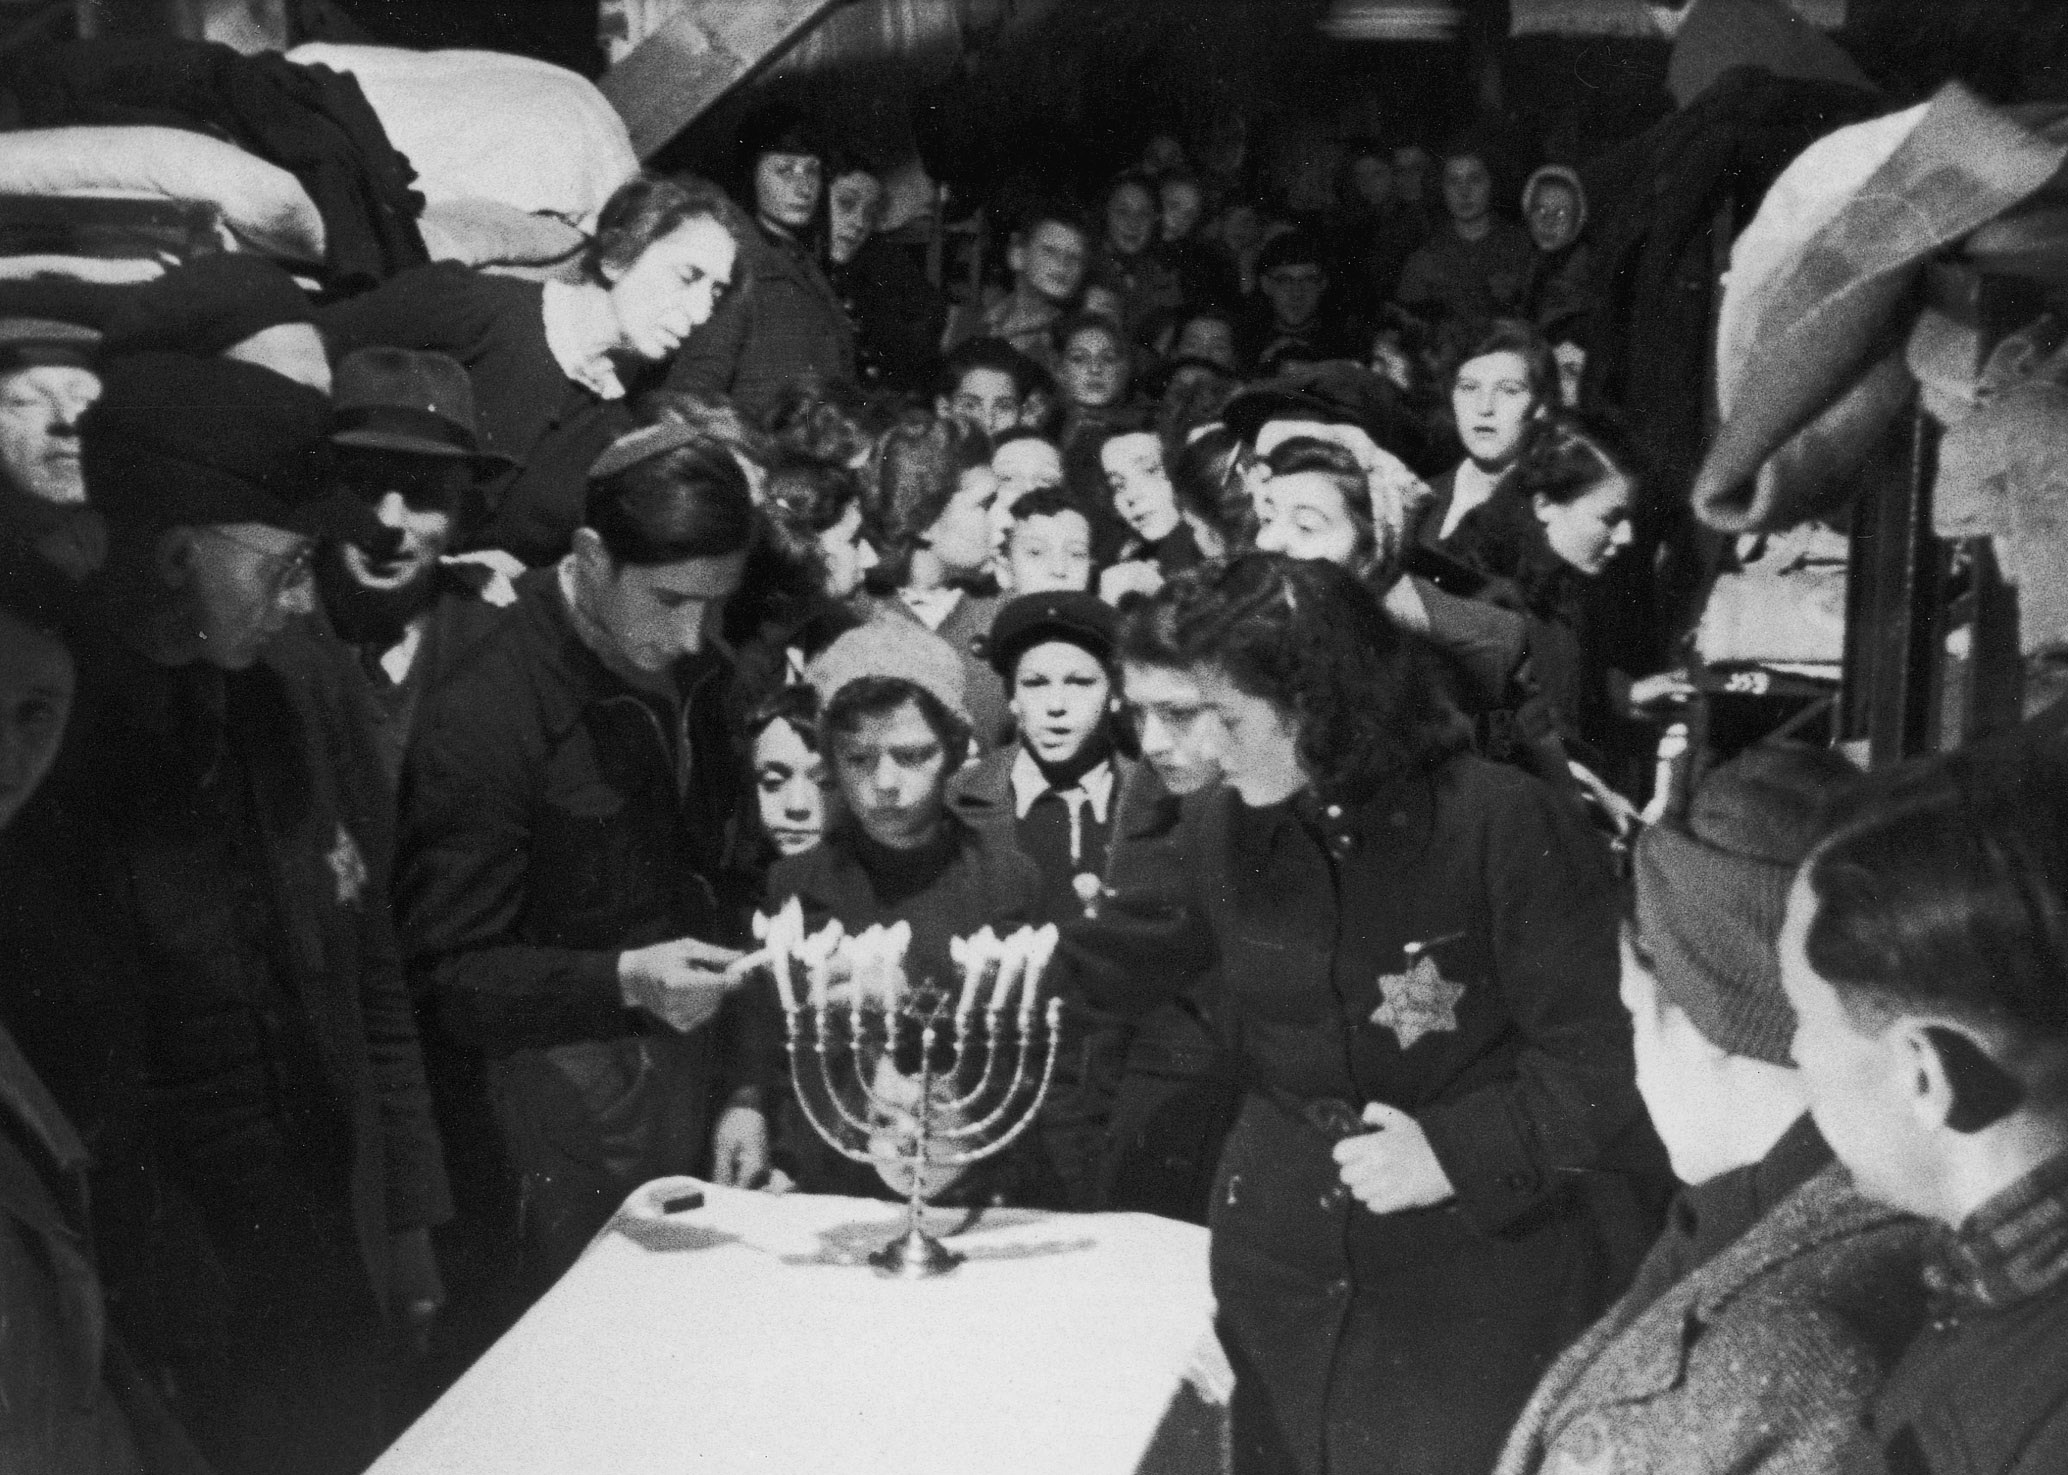 Gratis toegang op zondag 10 december: “Ontmoeting en kennis tegen antisemitisme” 